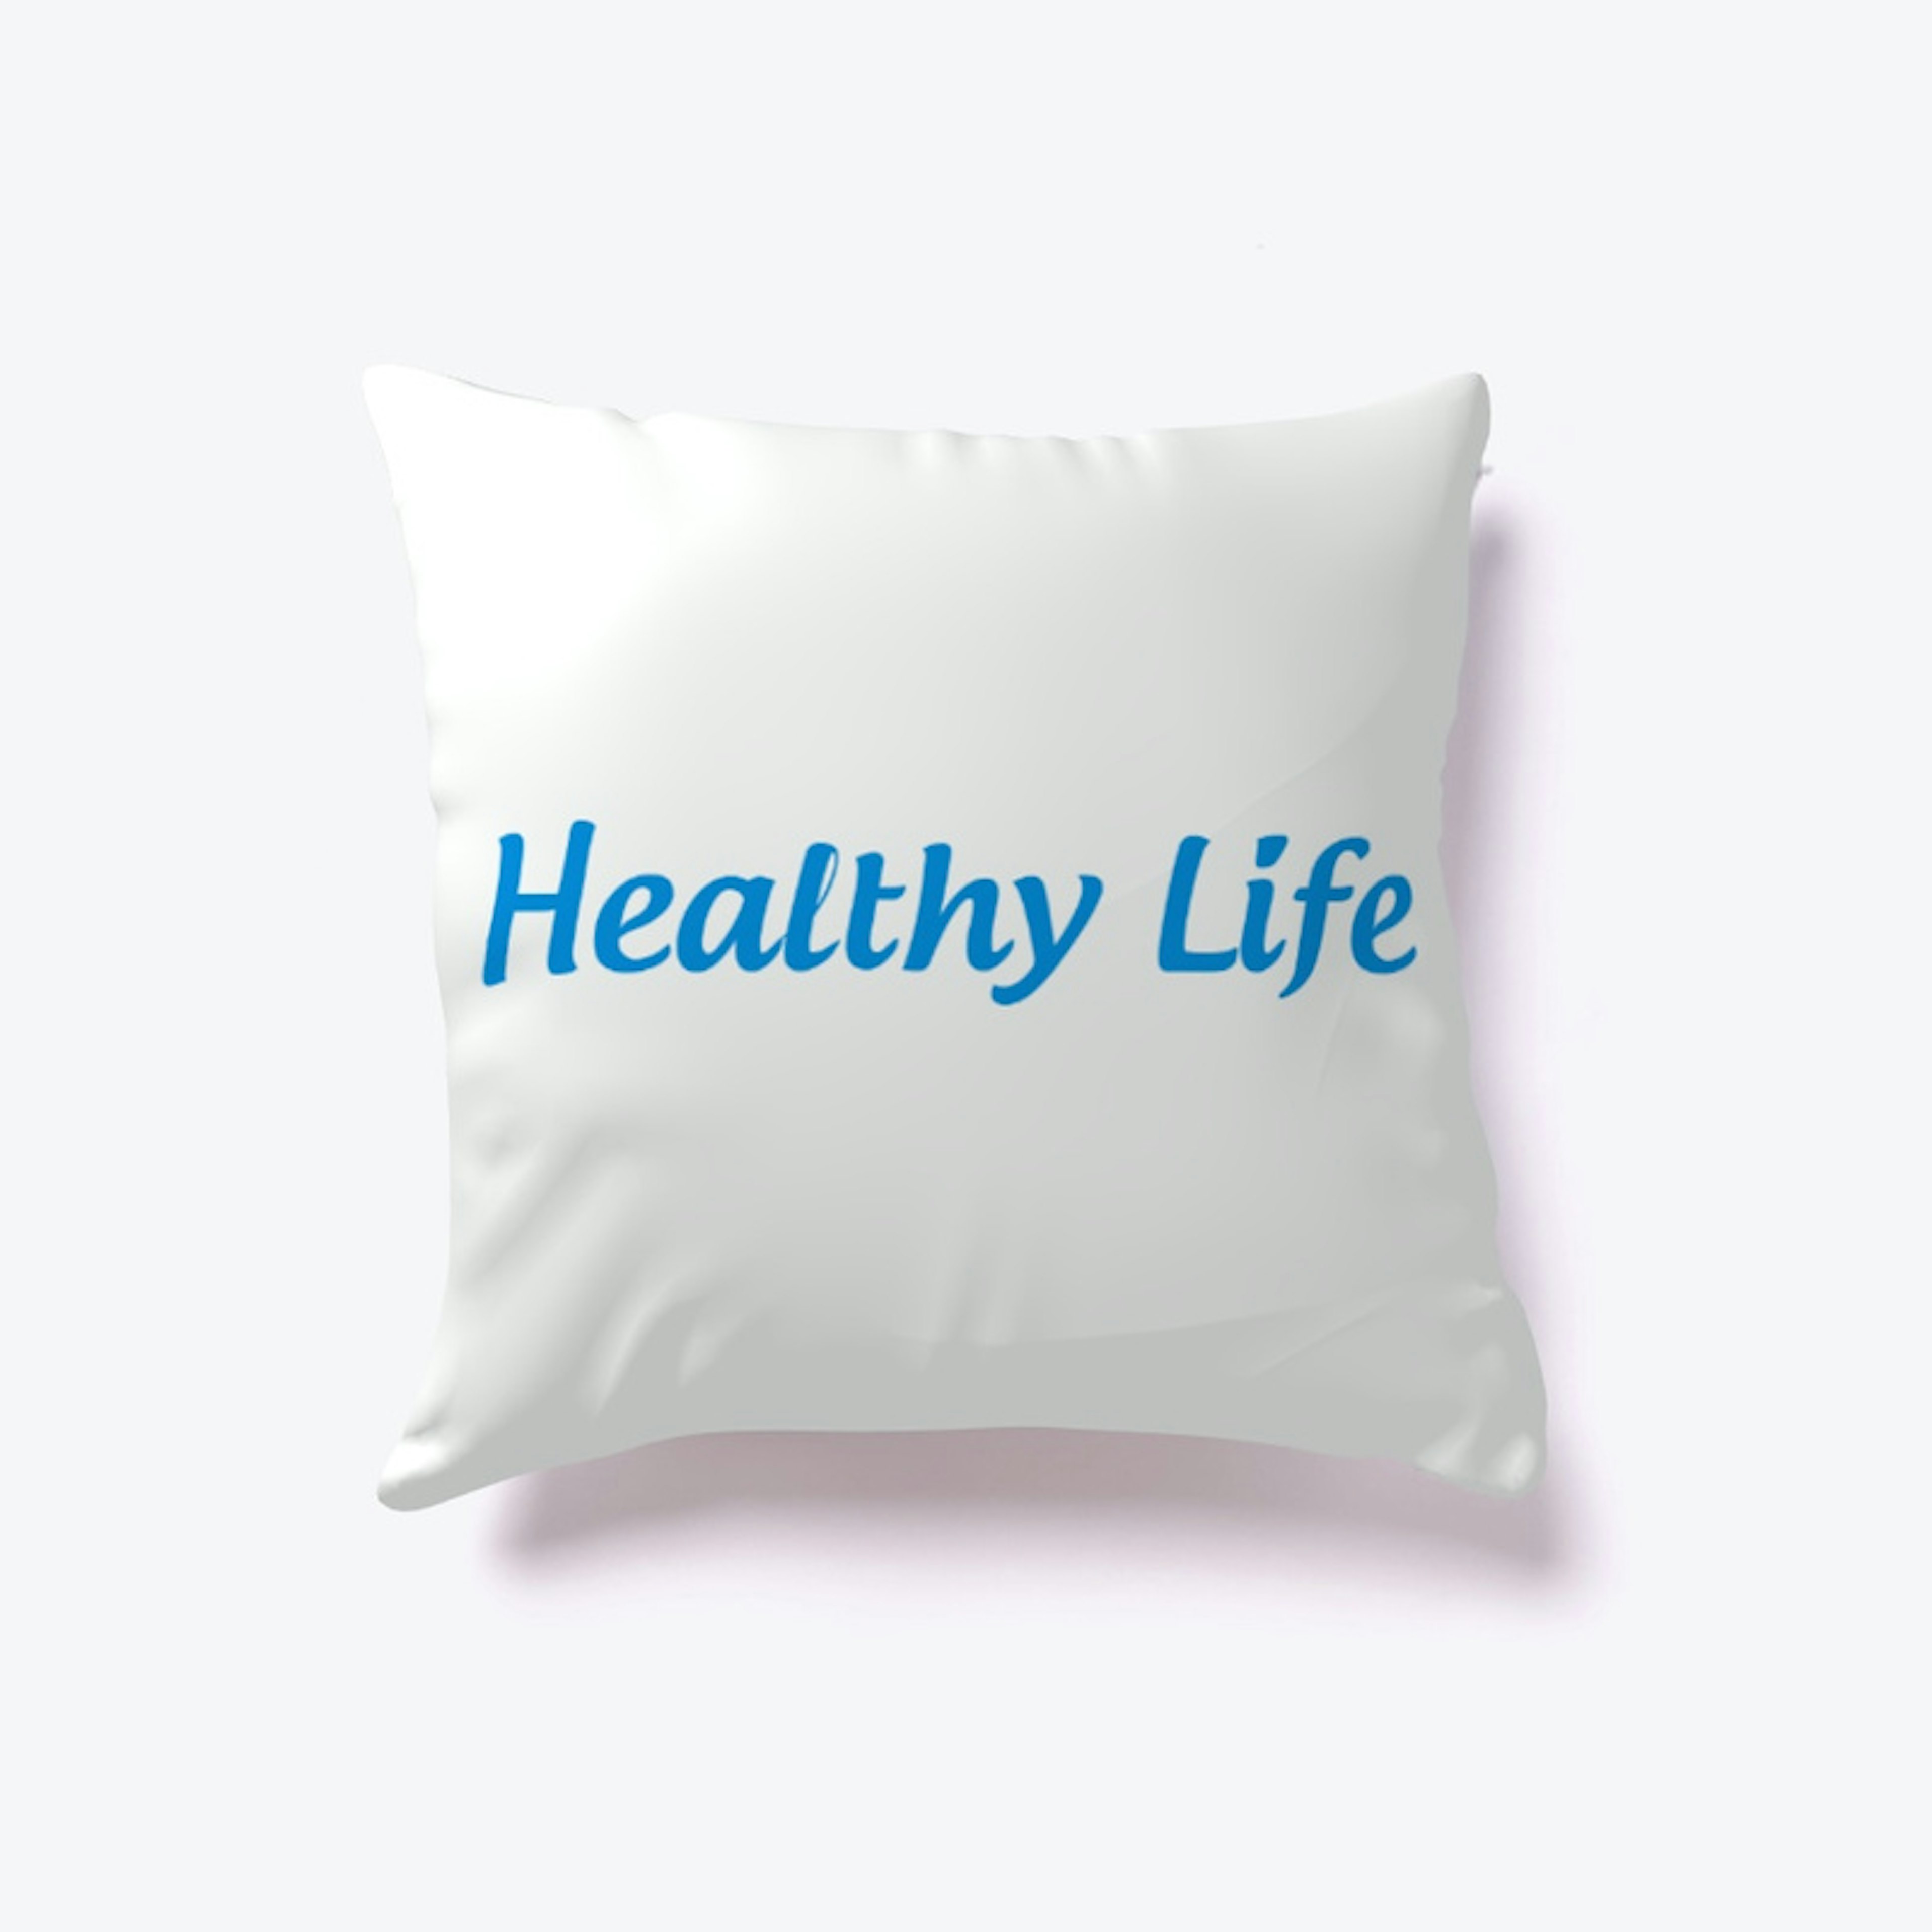 Blue Indoor Pillow "Healthy Life